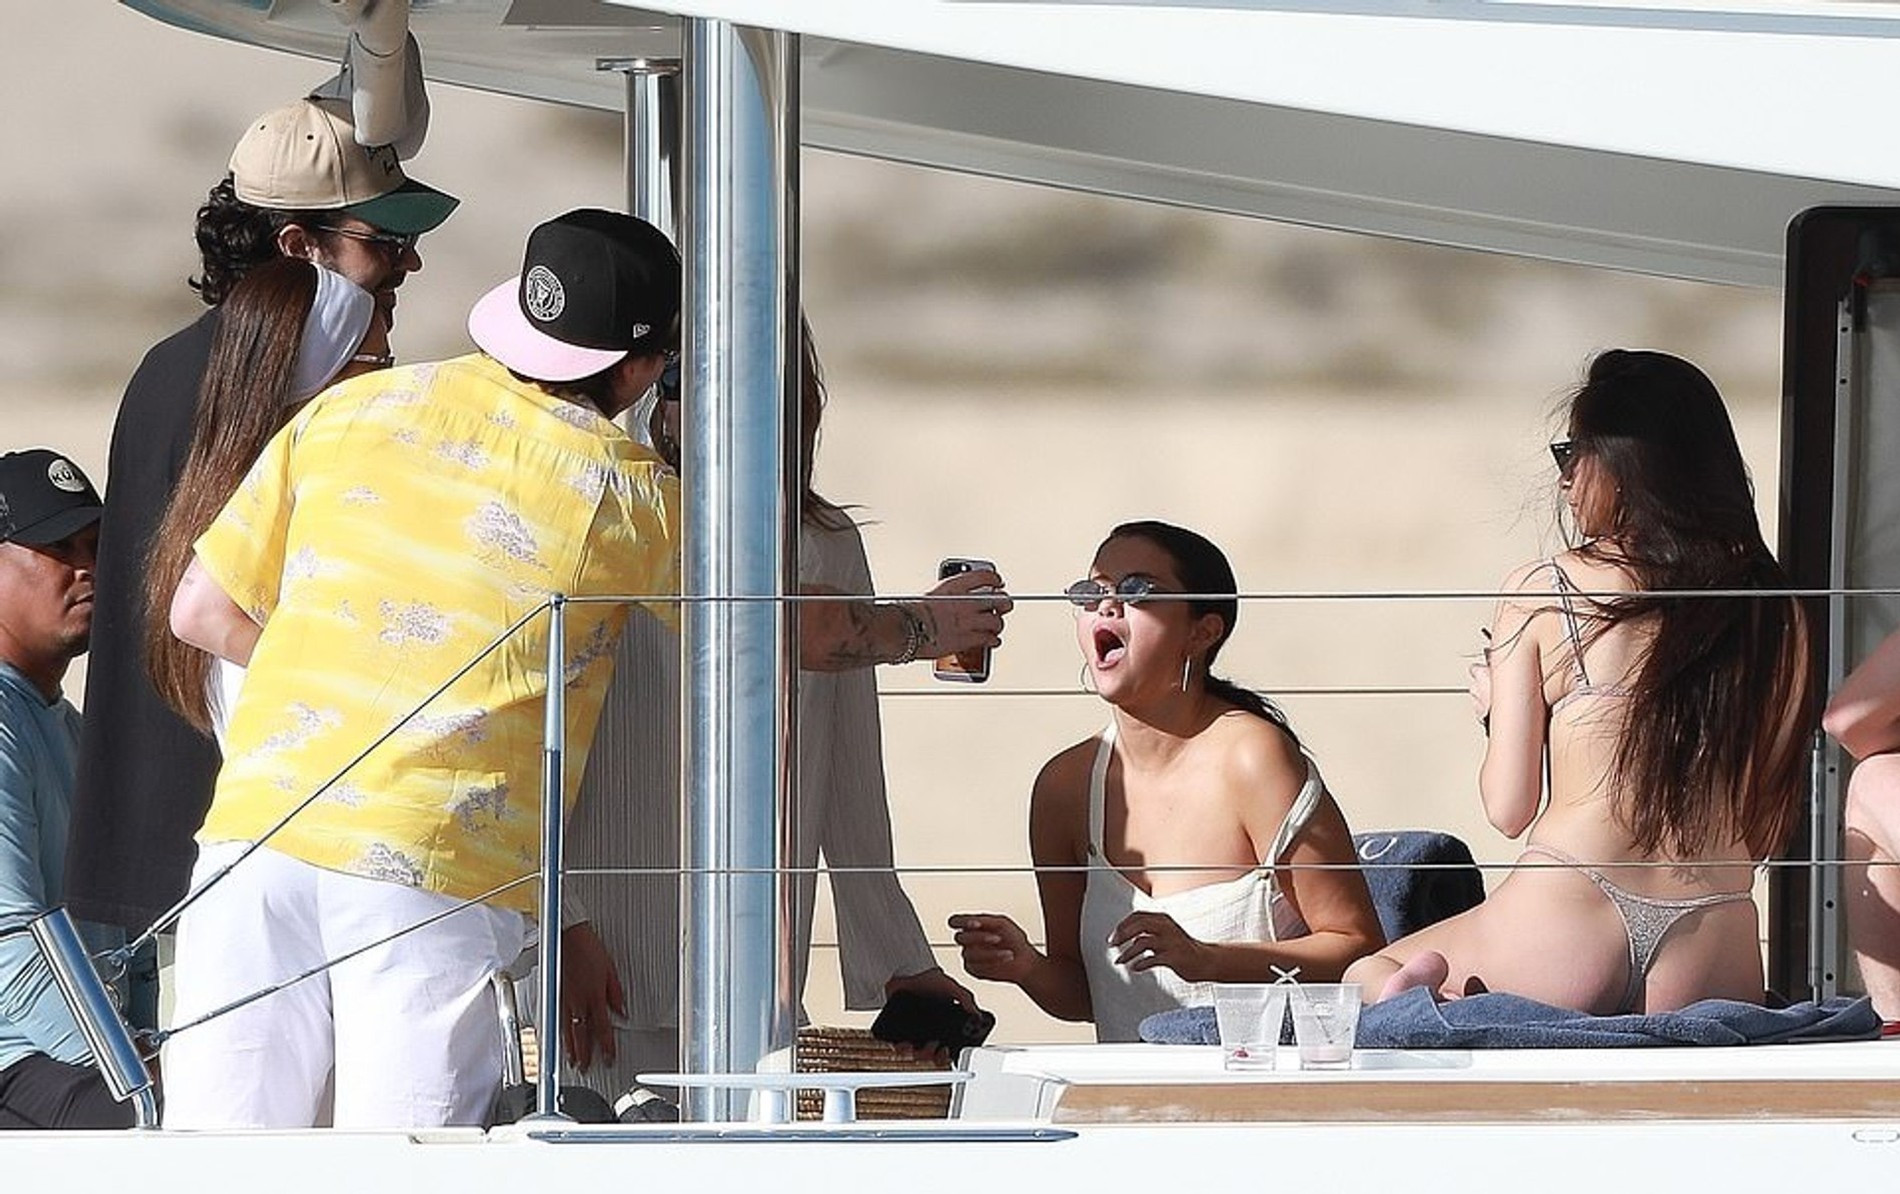 Селена Гомес, Никола Пельтц и Бруклин Бекхэм на яхте в Мексике
Фото: Daily Mail